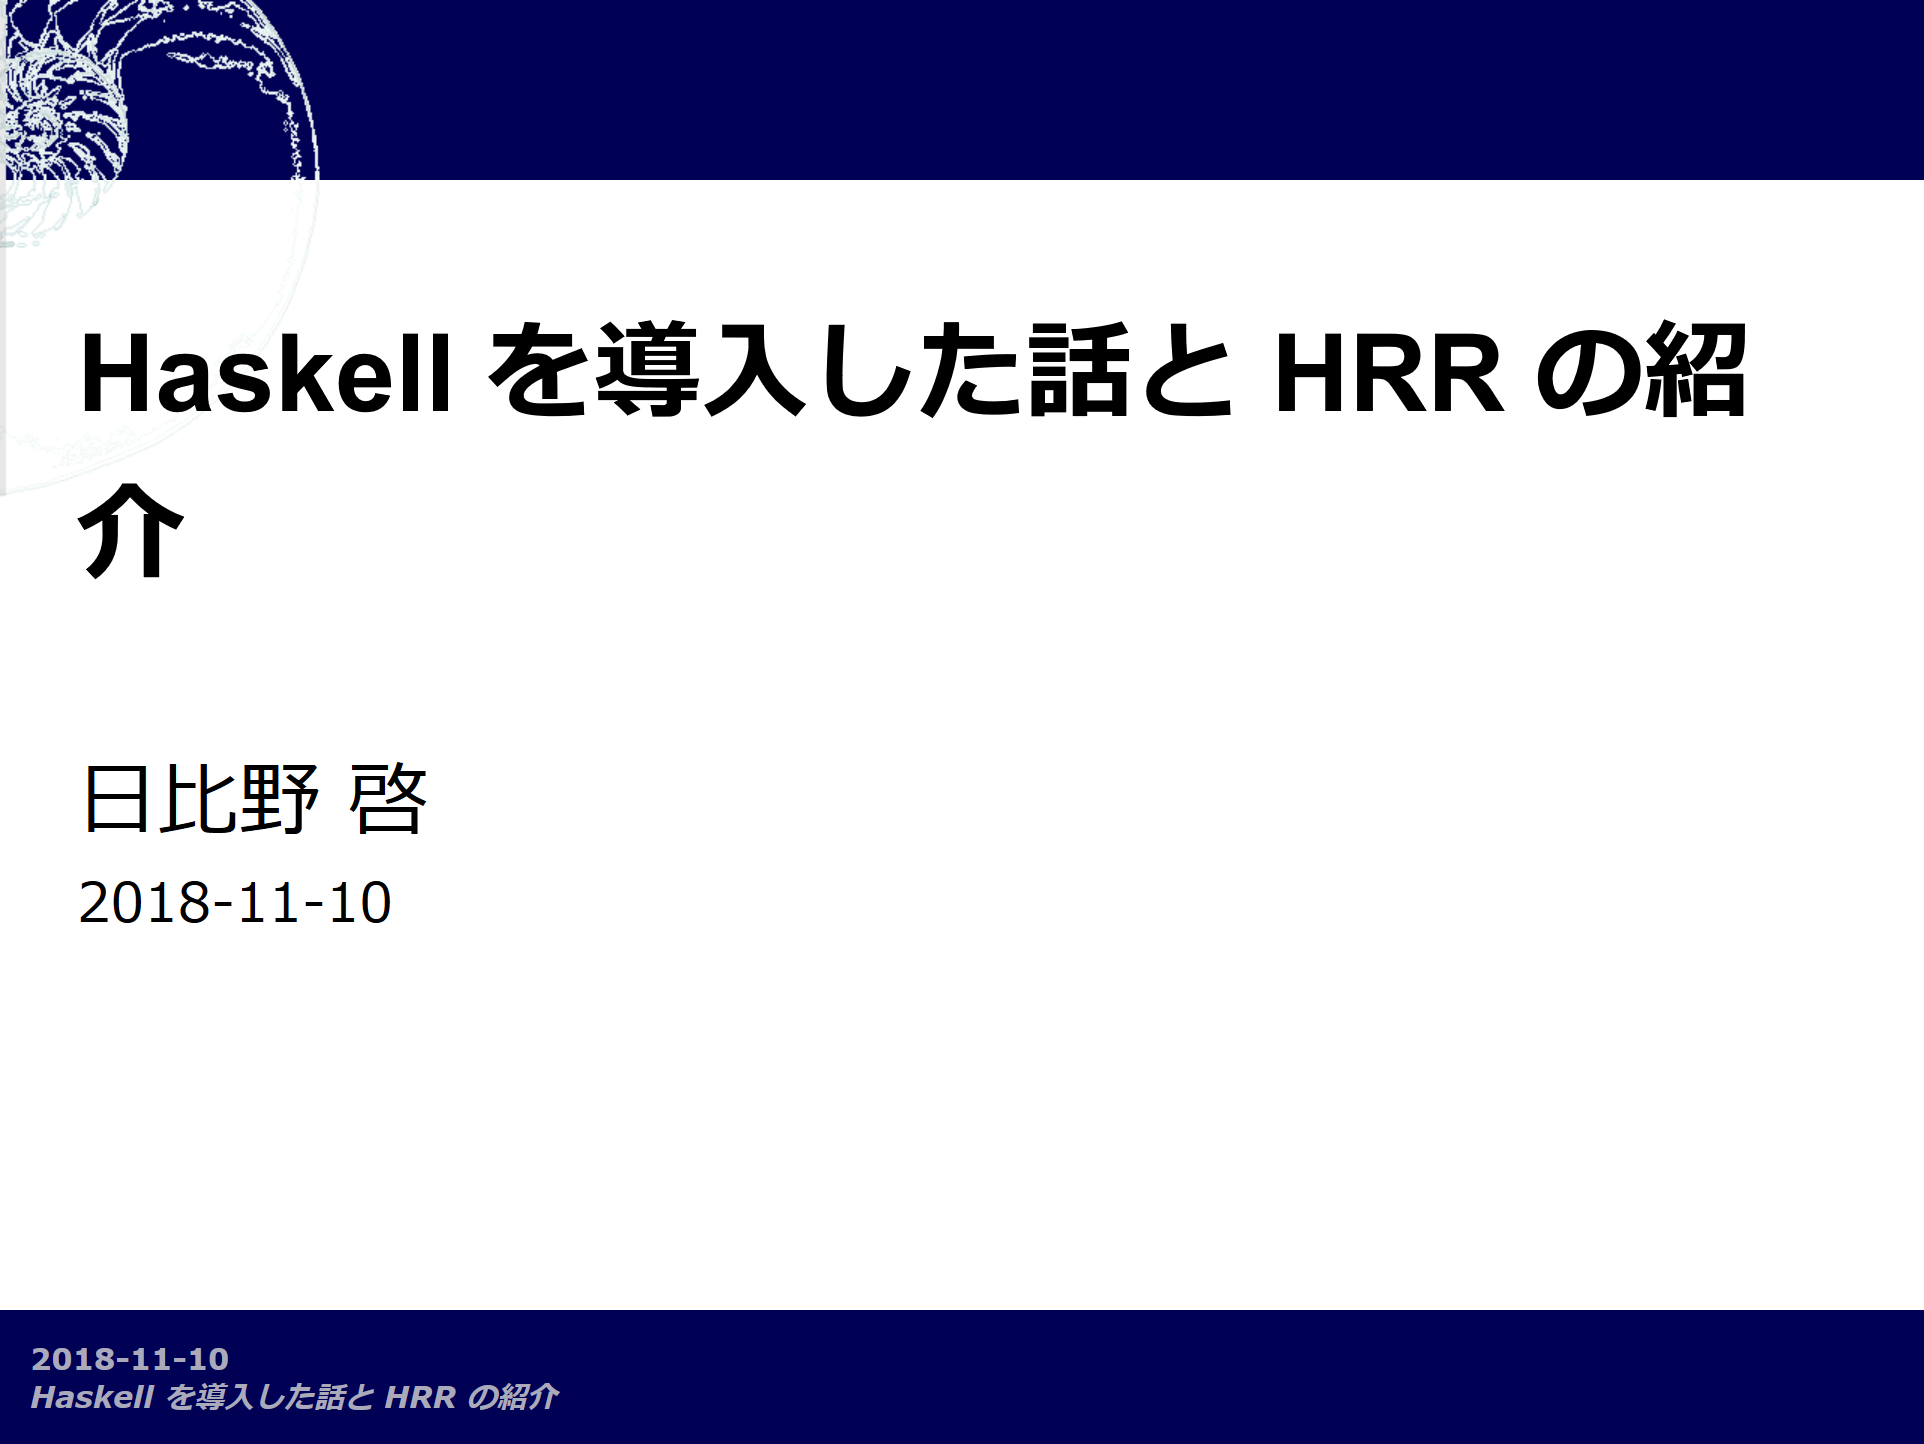 Haskell を導入した話と HRR の紹介